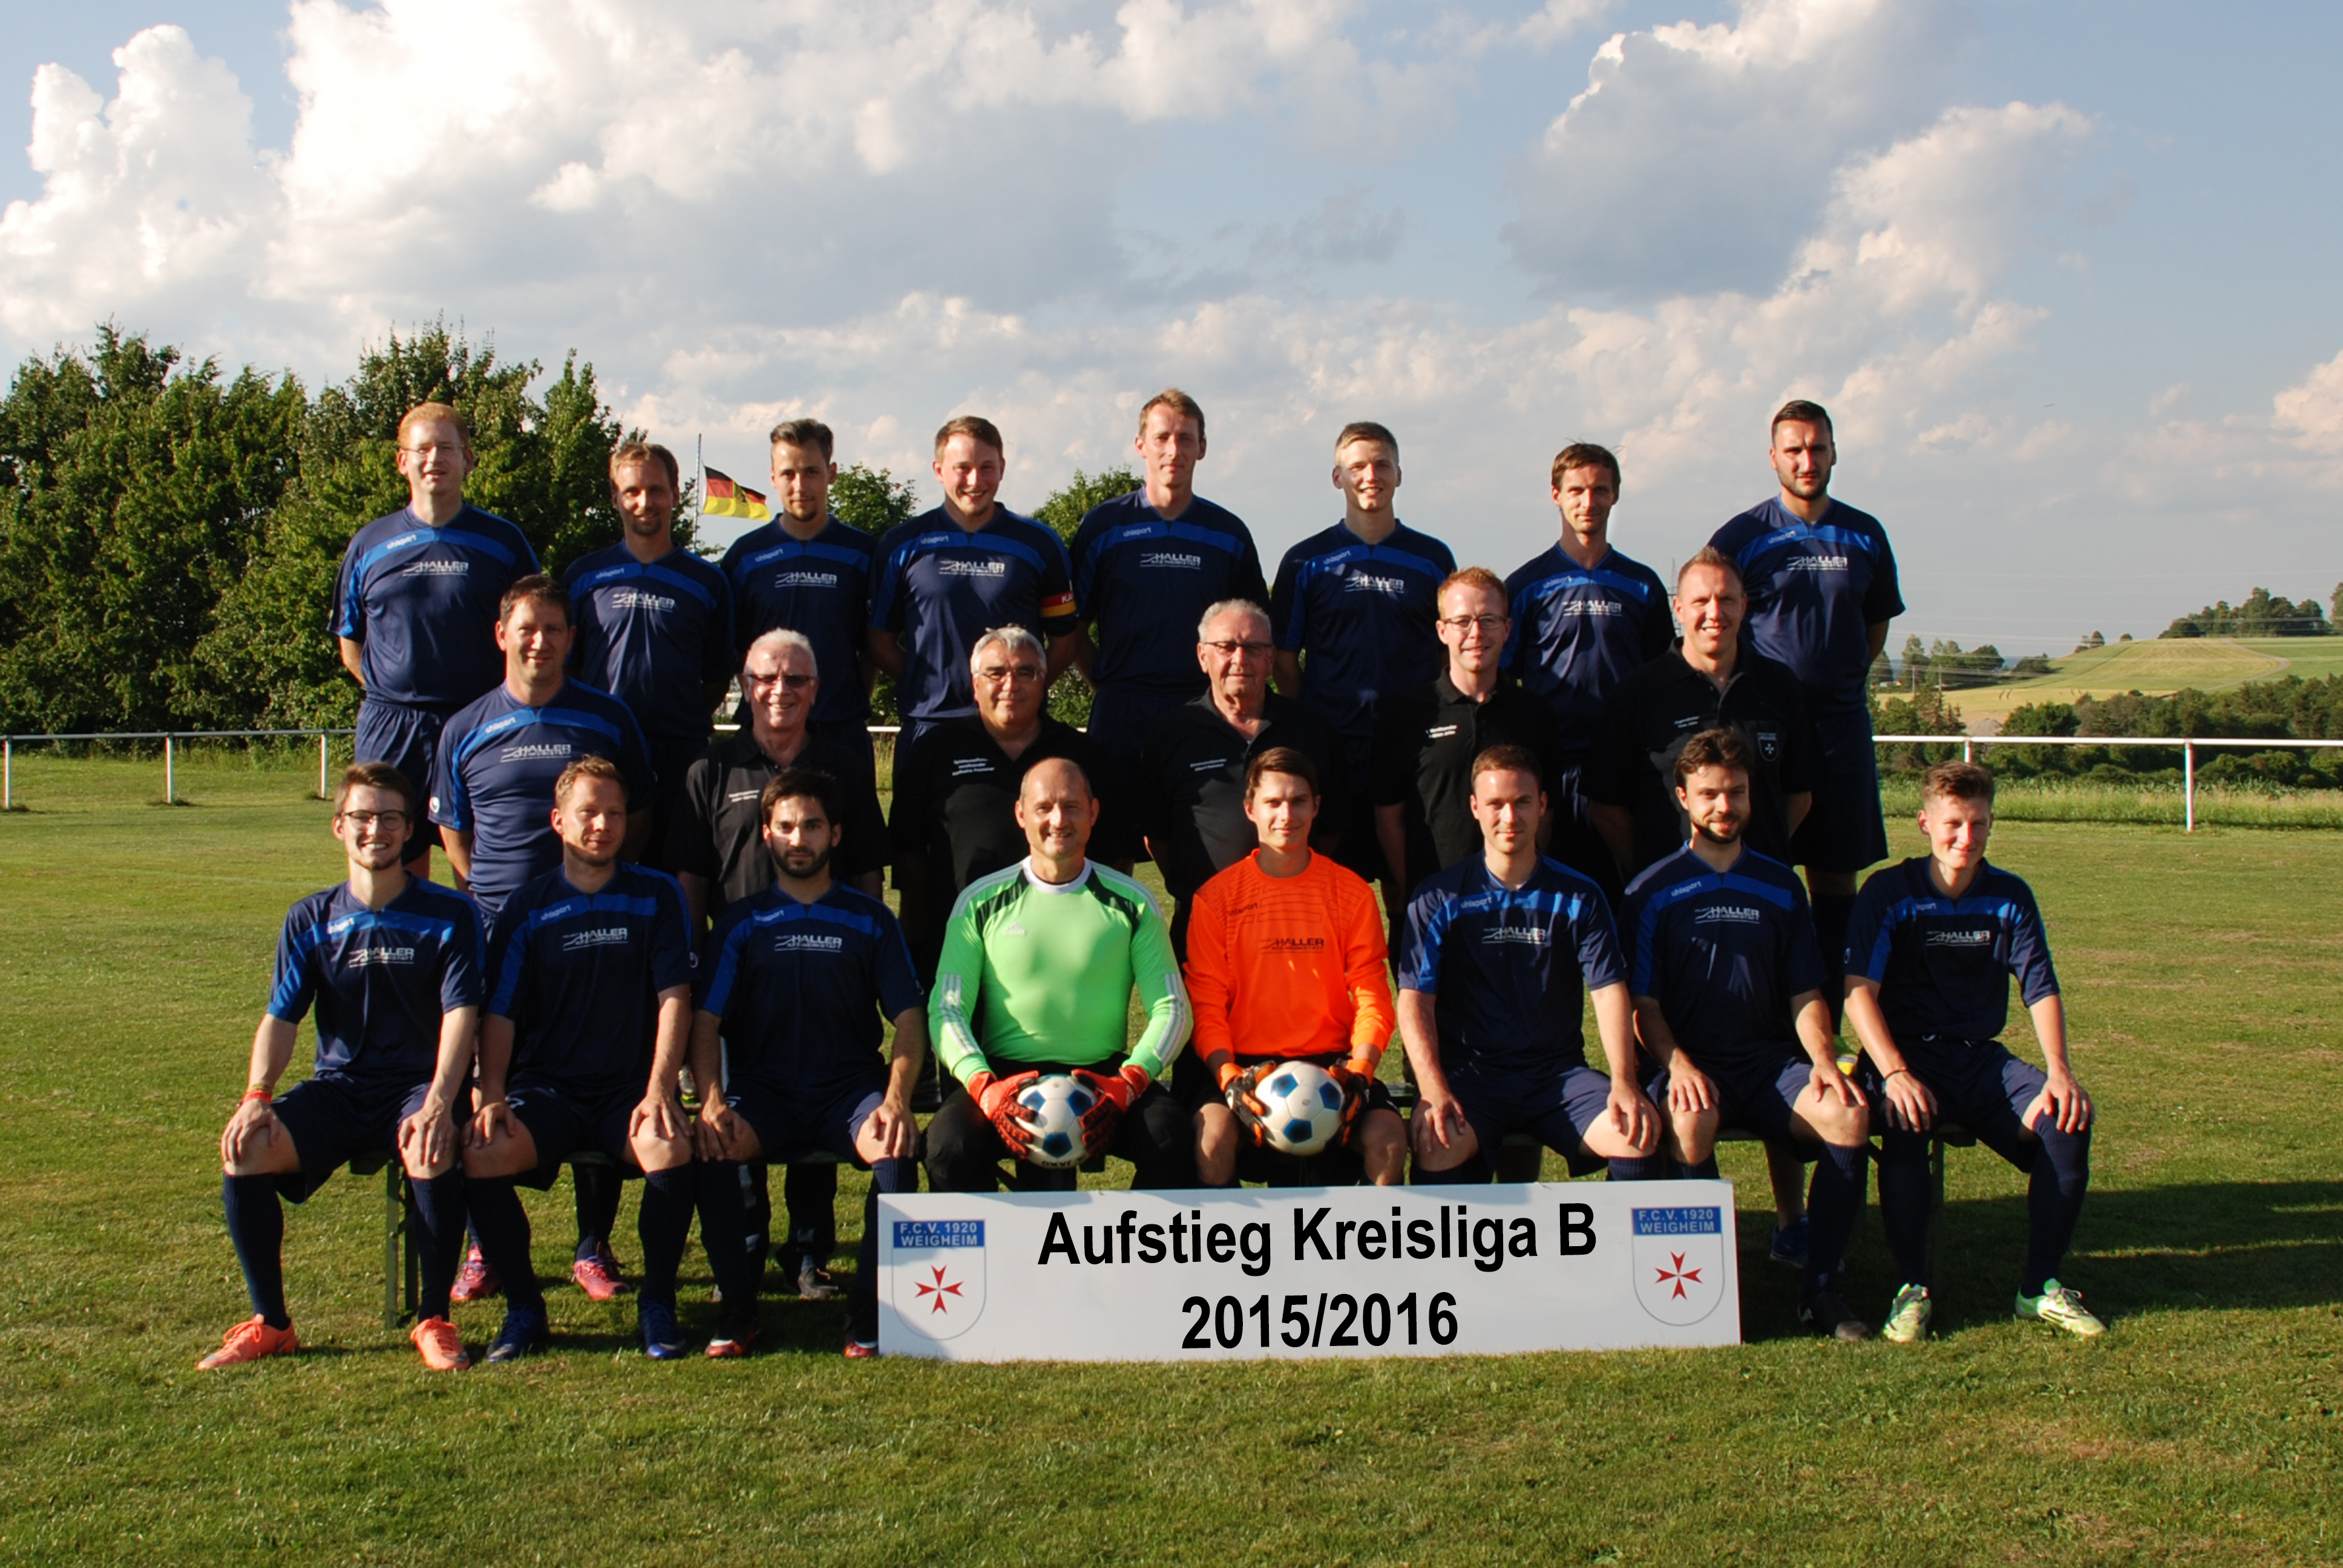 FC Weigheim Aufstieg Kreisliga B